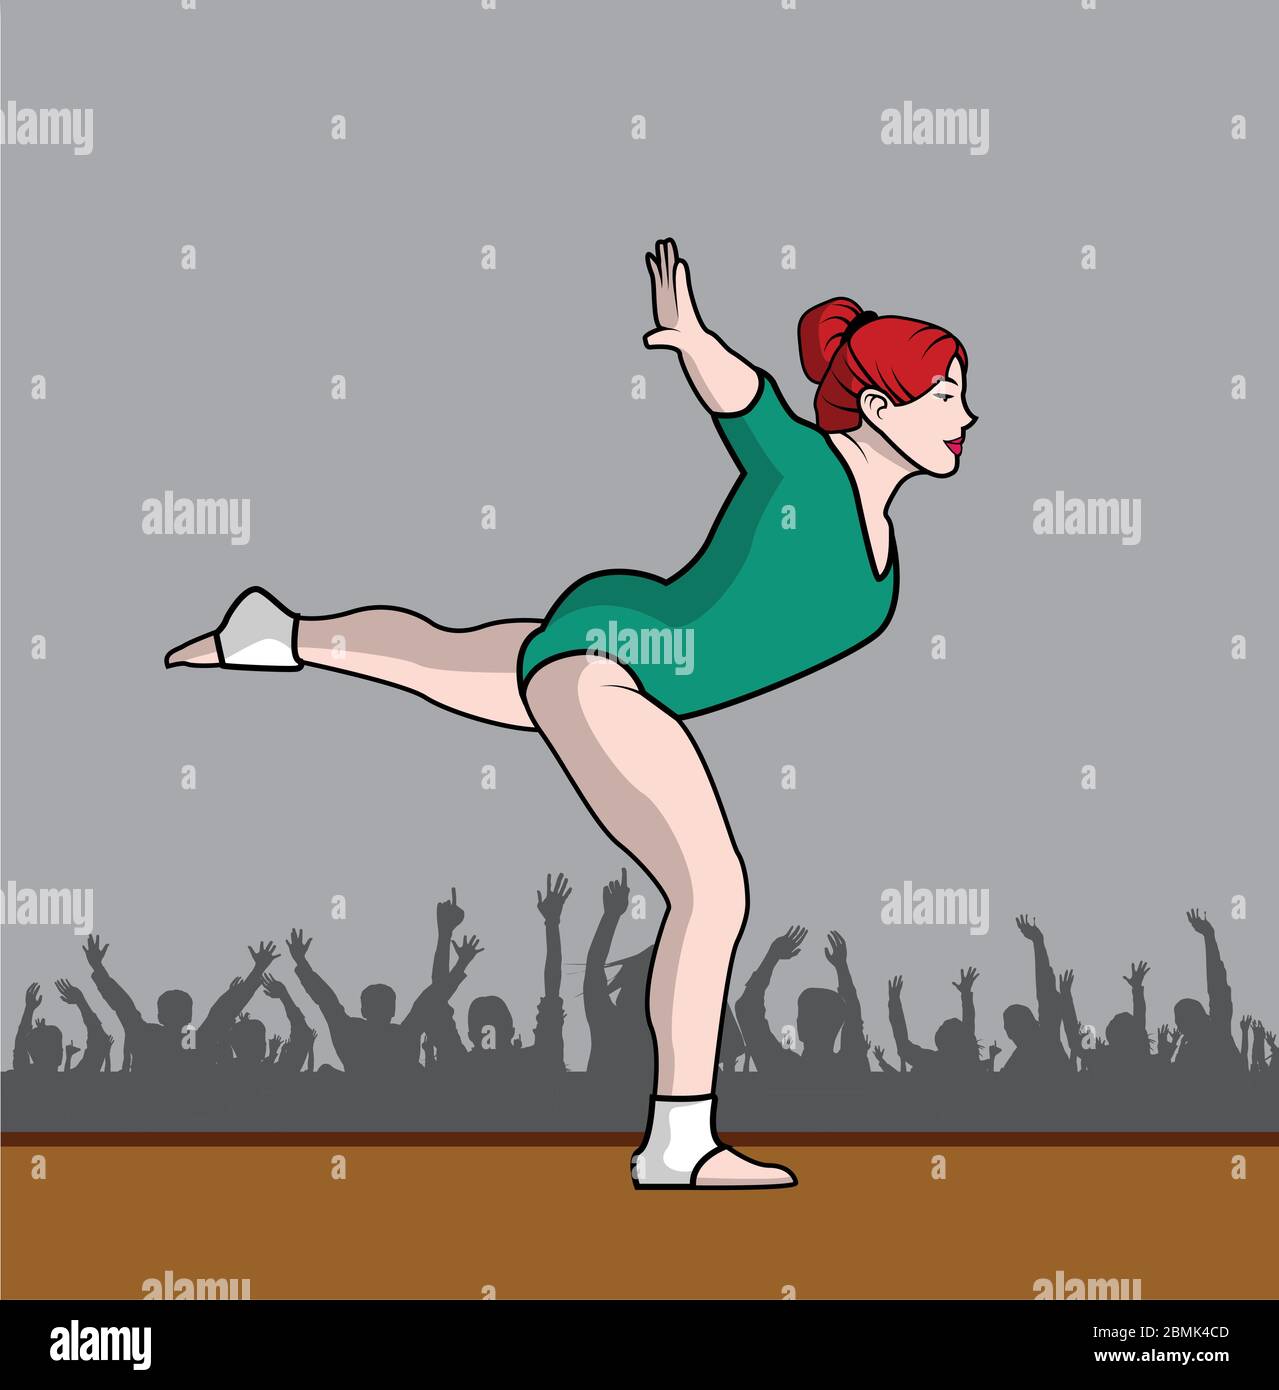 femme de gymnaste avec le léopard vert et le public Illustration de Vecteur